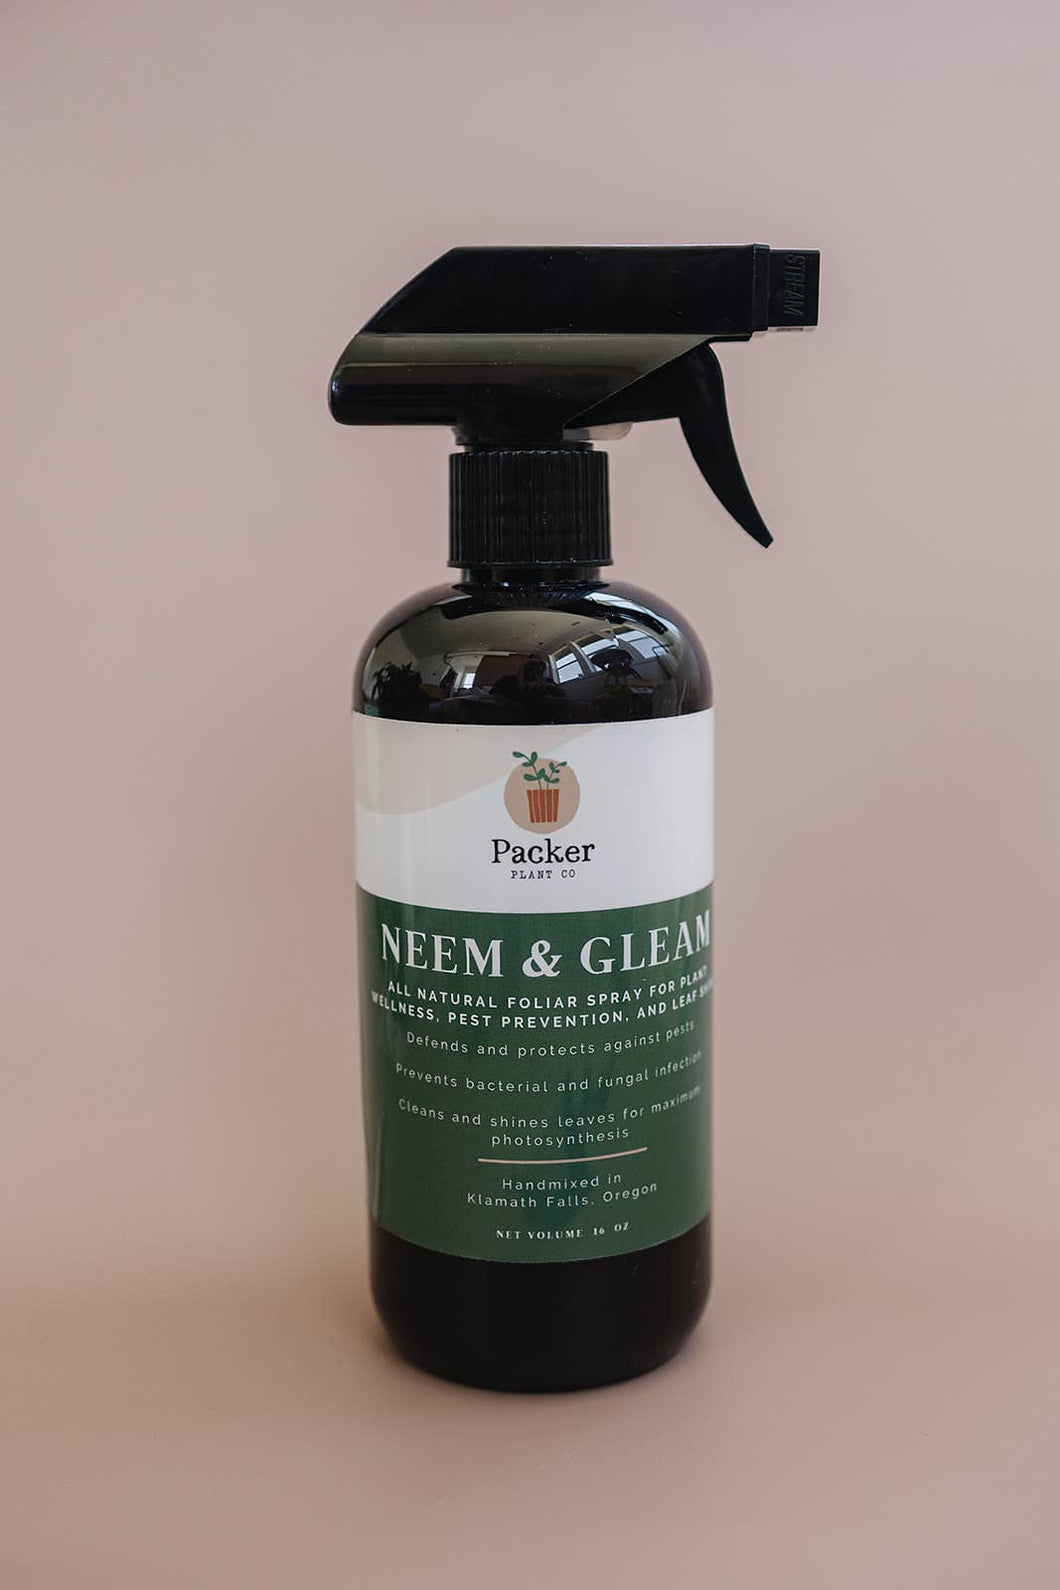 Neem & Gleam - All Natural Neem Oil Spray for Plants